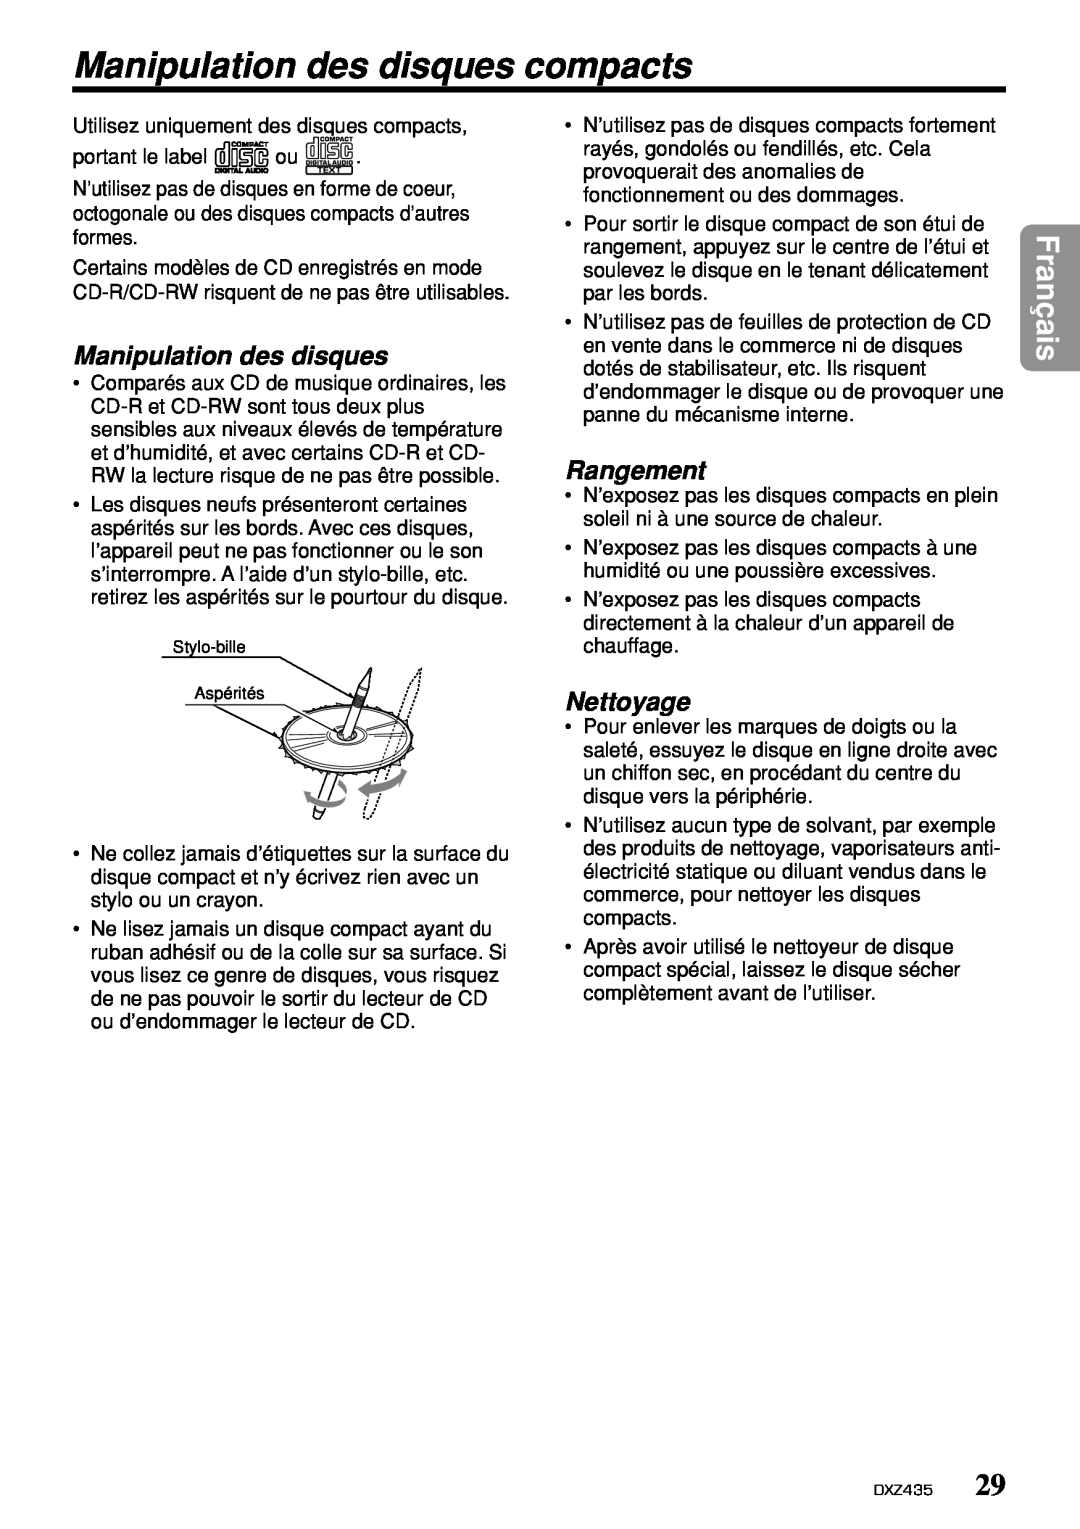 Clarion DXZ435 owner manual Manipulation des disques compacts, Rangement, Nettoyage, Français 